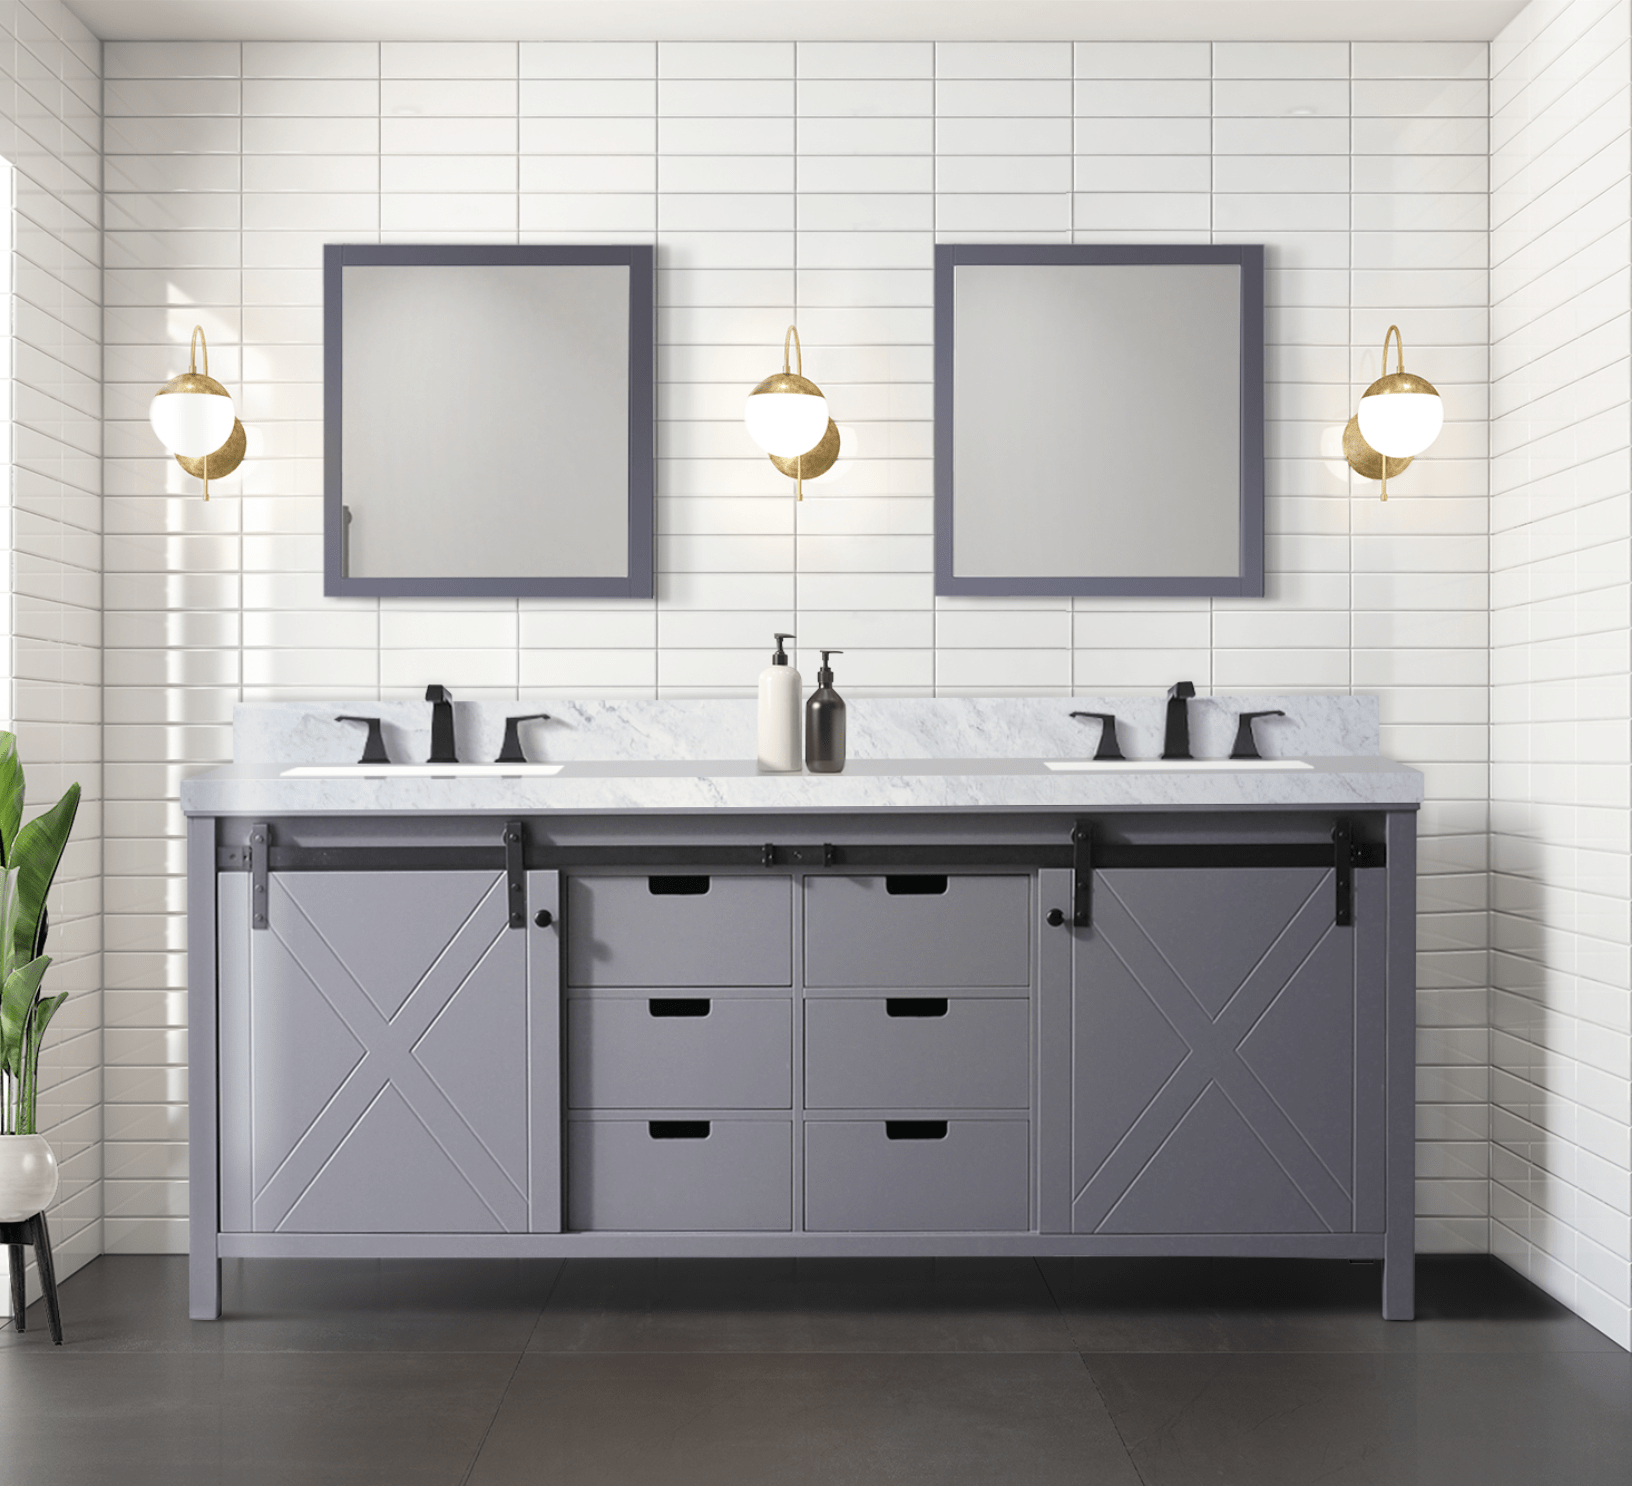 Bell + Modern Bathroom Vanity Dark Grey / No Countertop / No Mirror Ketchum 80" x 22" Double Bath Vanity